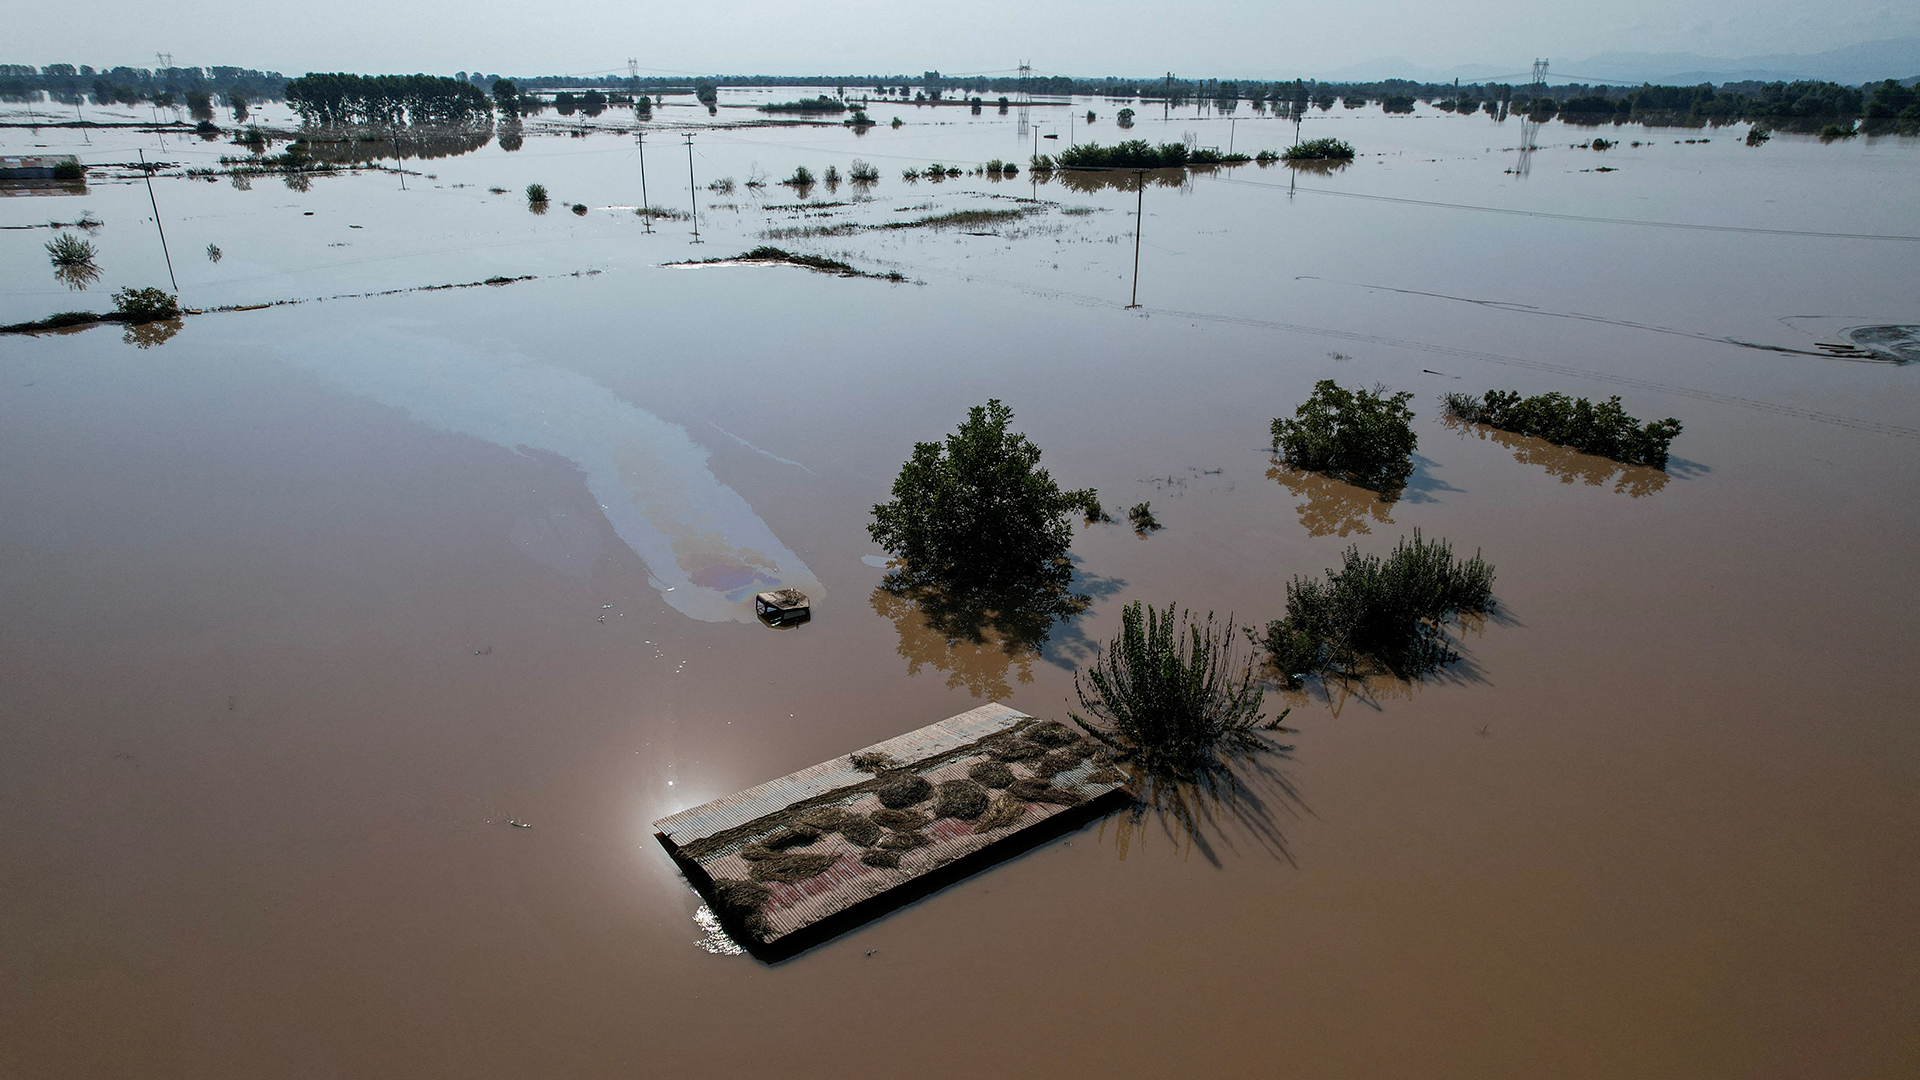 Προ του κινδύνου αποκλεισμού από τις αποζημιώσεις πλημμυροπαθείς: Τους ζητούν φωτογραφίες της καταστροφής τους